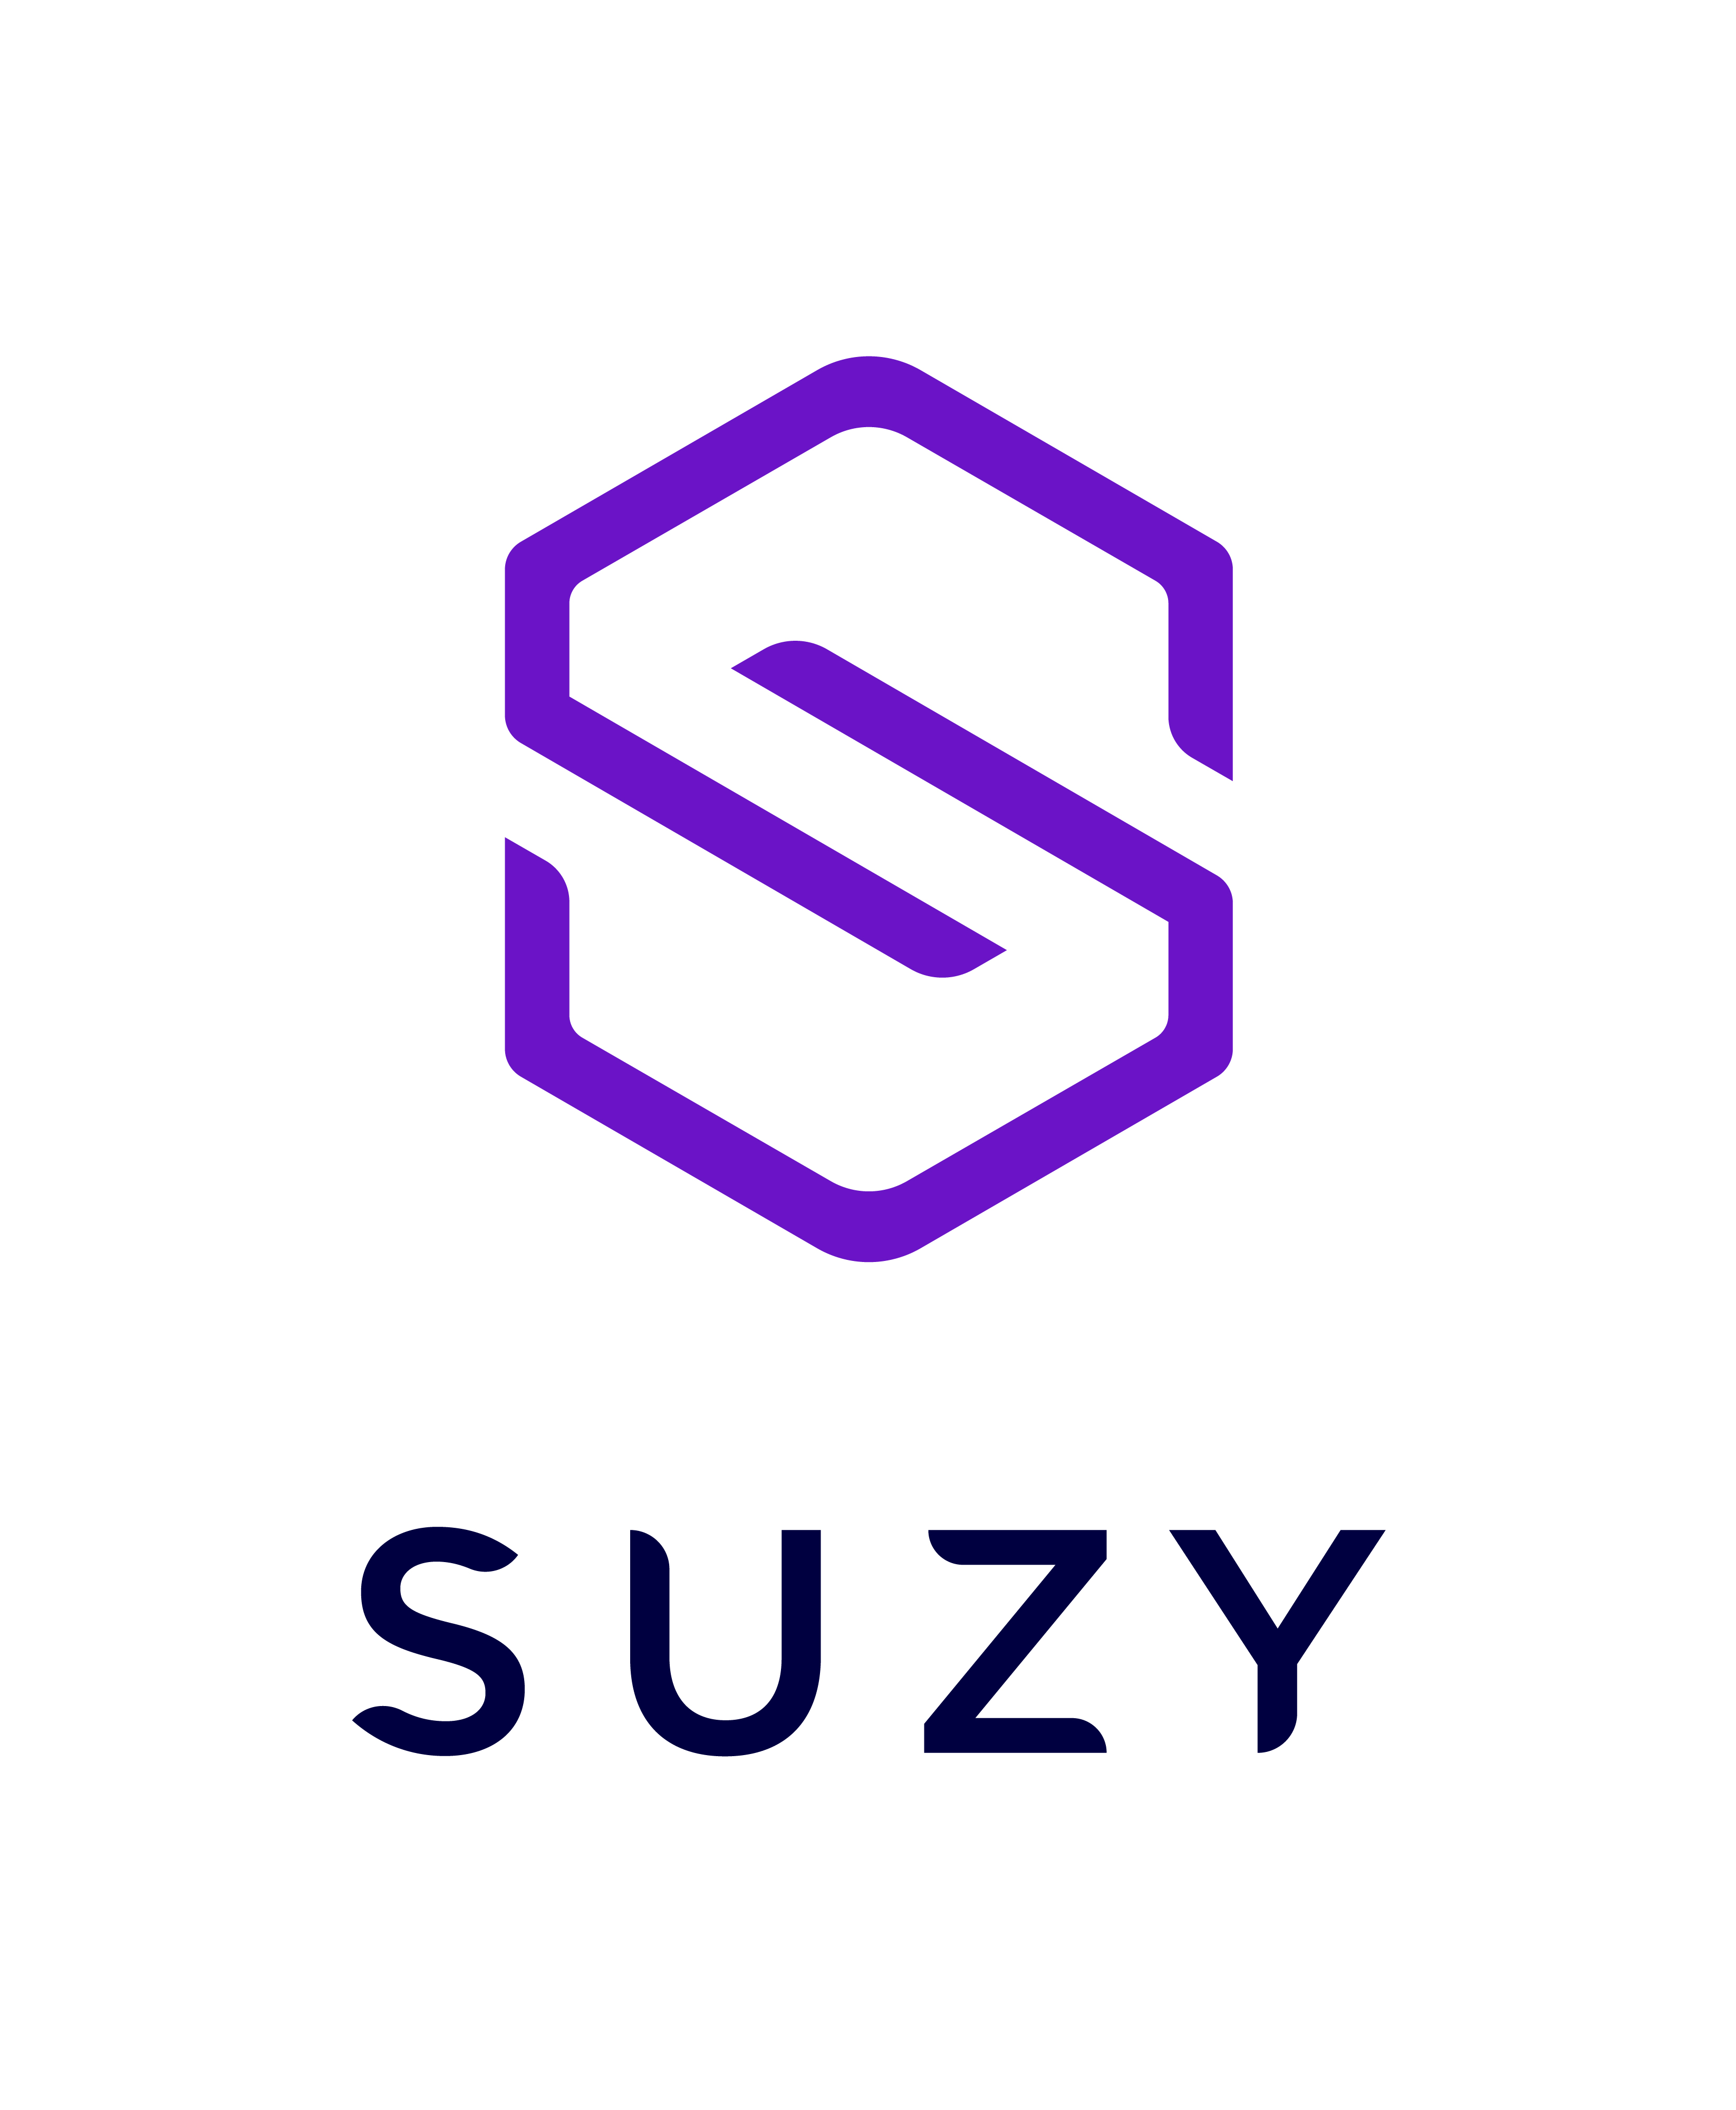 SUZY